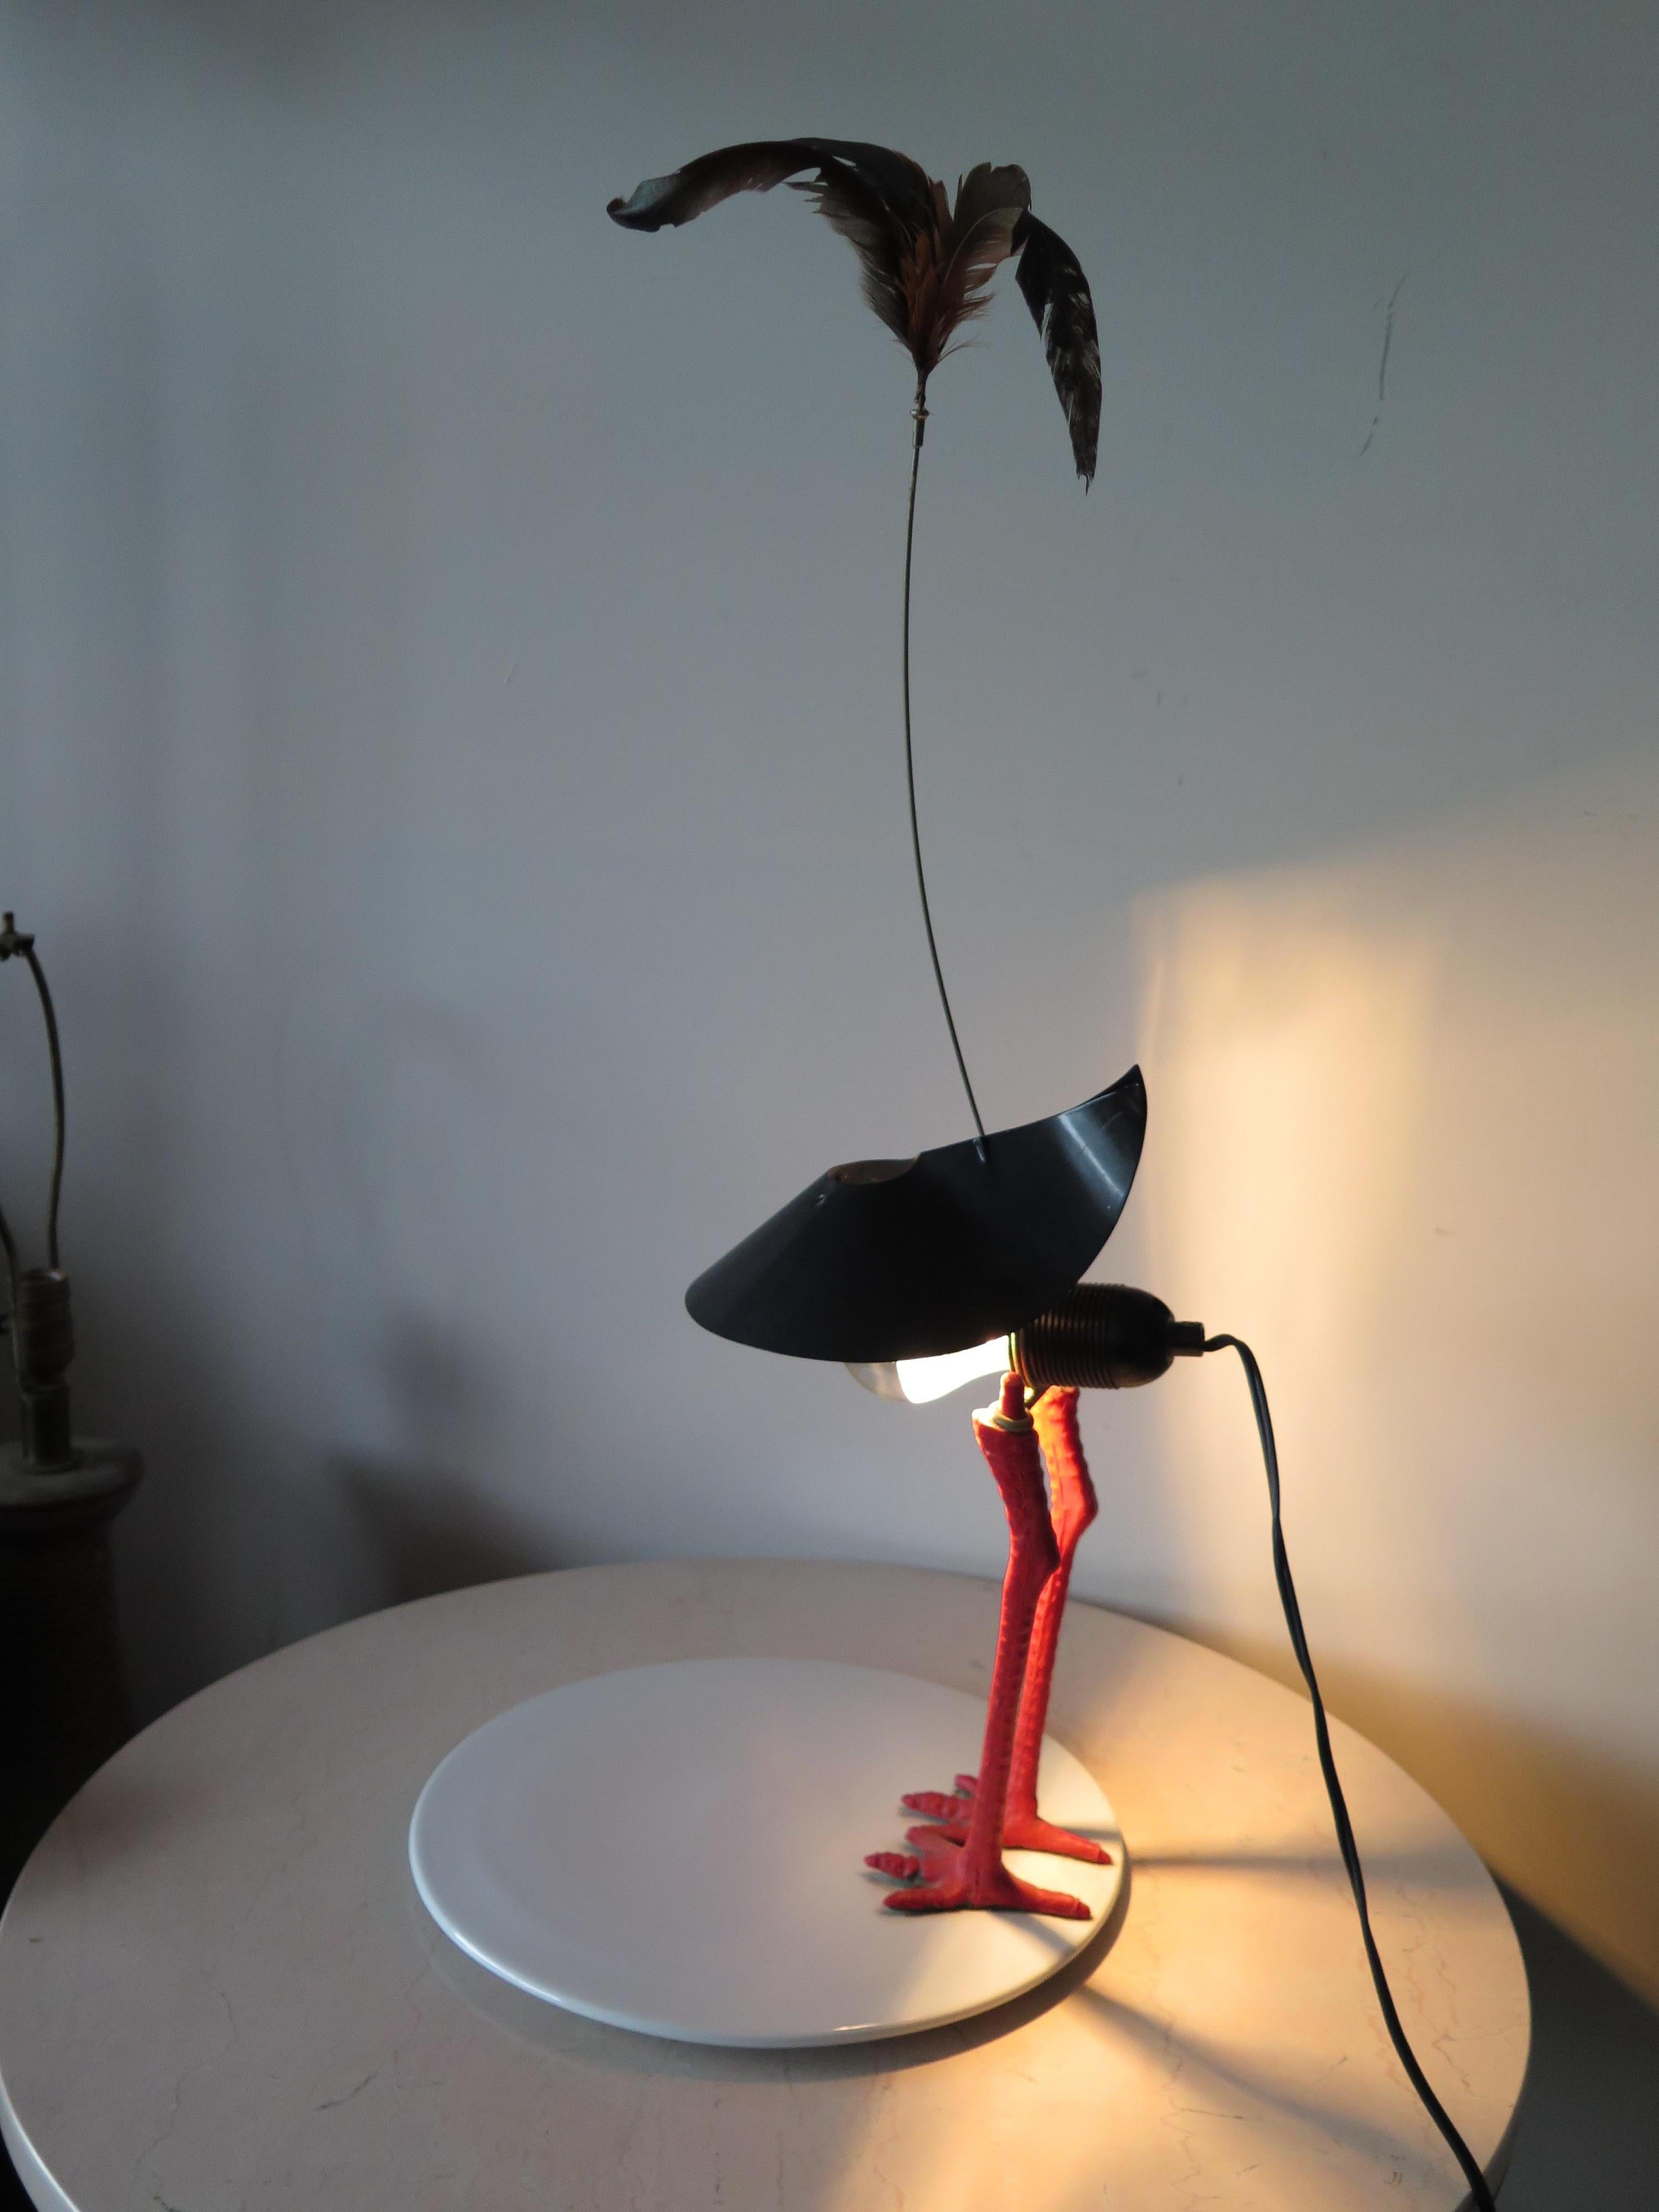 Lampe de table fantaisiste d'Ingo Maurer, signée BiBiBiBi, fabriquée en Allemagne.